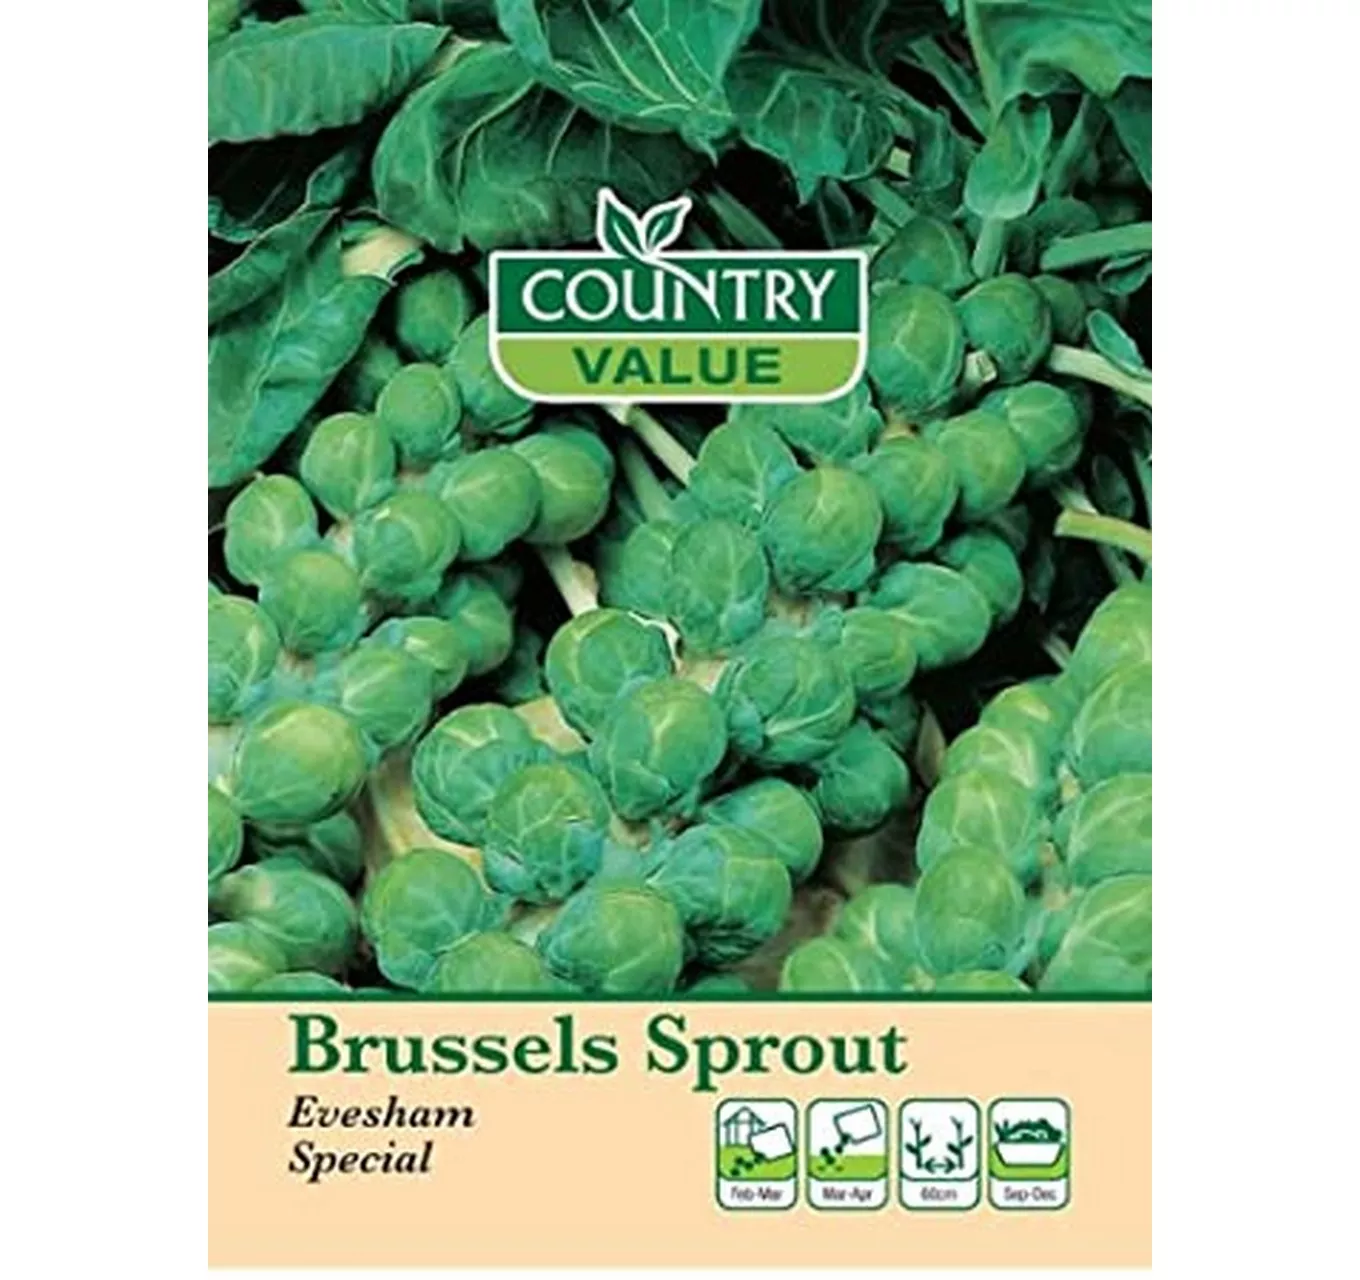 Brussells Sprout Evesham Speci